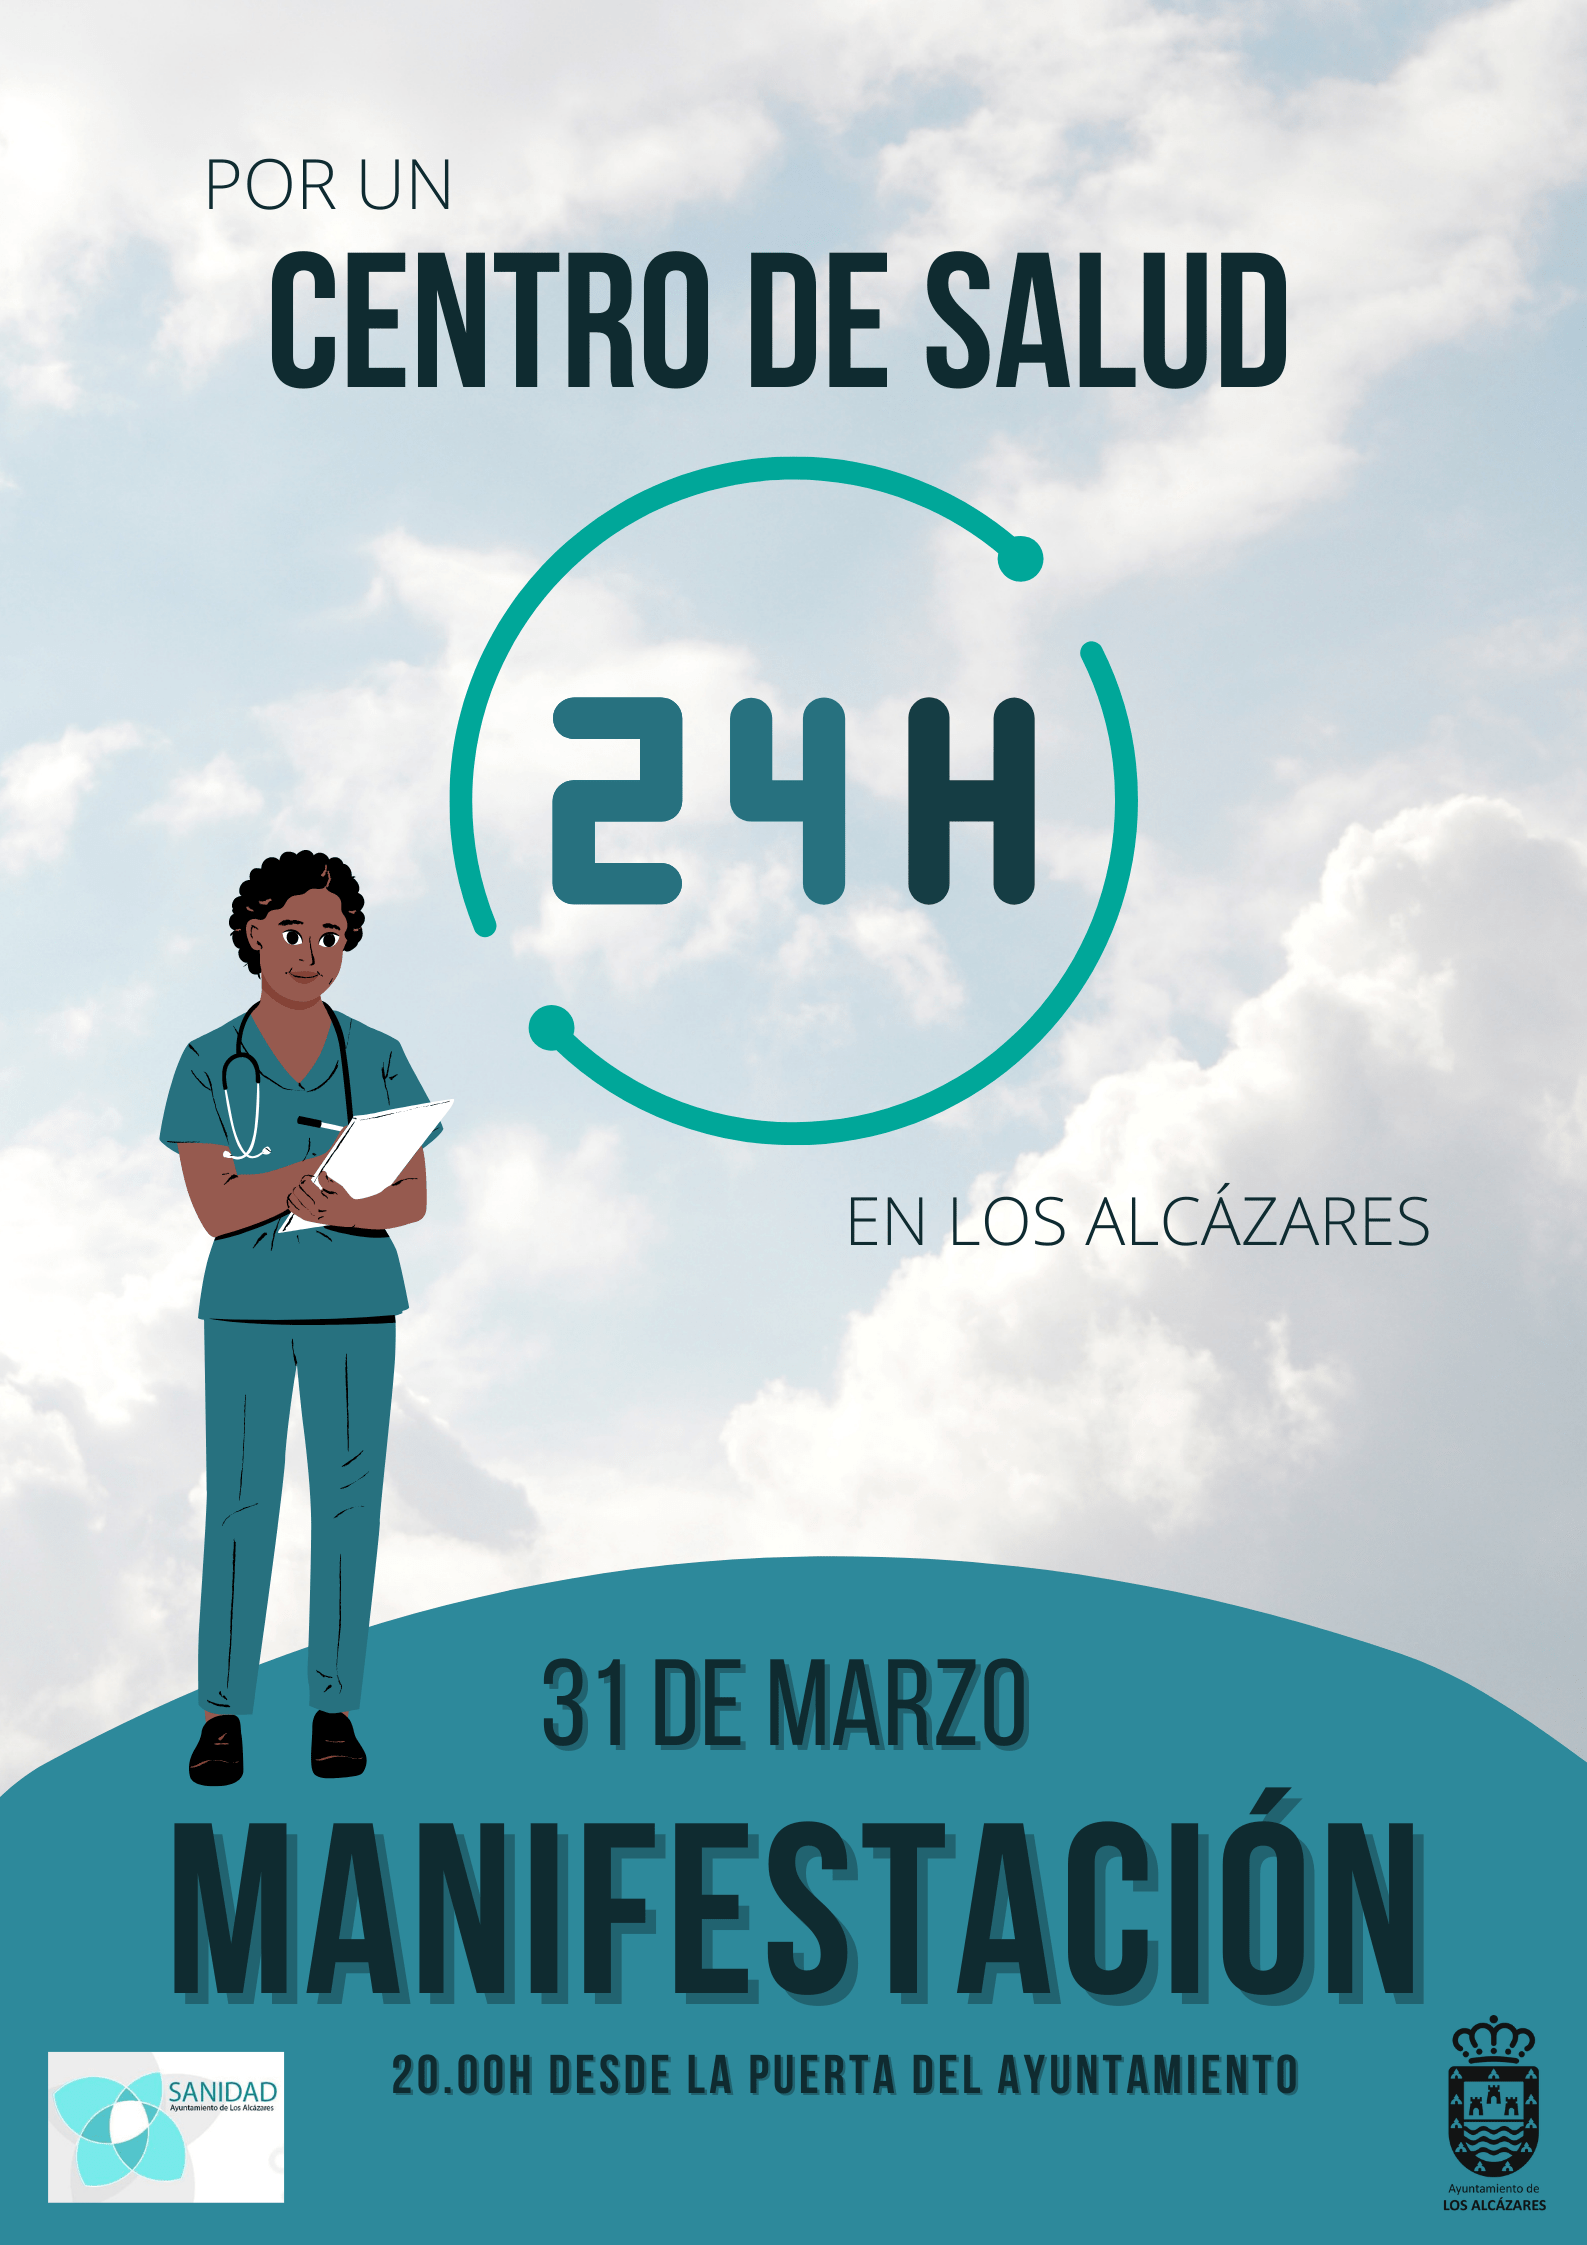 El Ayuntamiento de Los Alcázares convoca una manifestación para pedir en el Centro de Salud 24 horas jueves 31 de marzo 2022